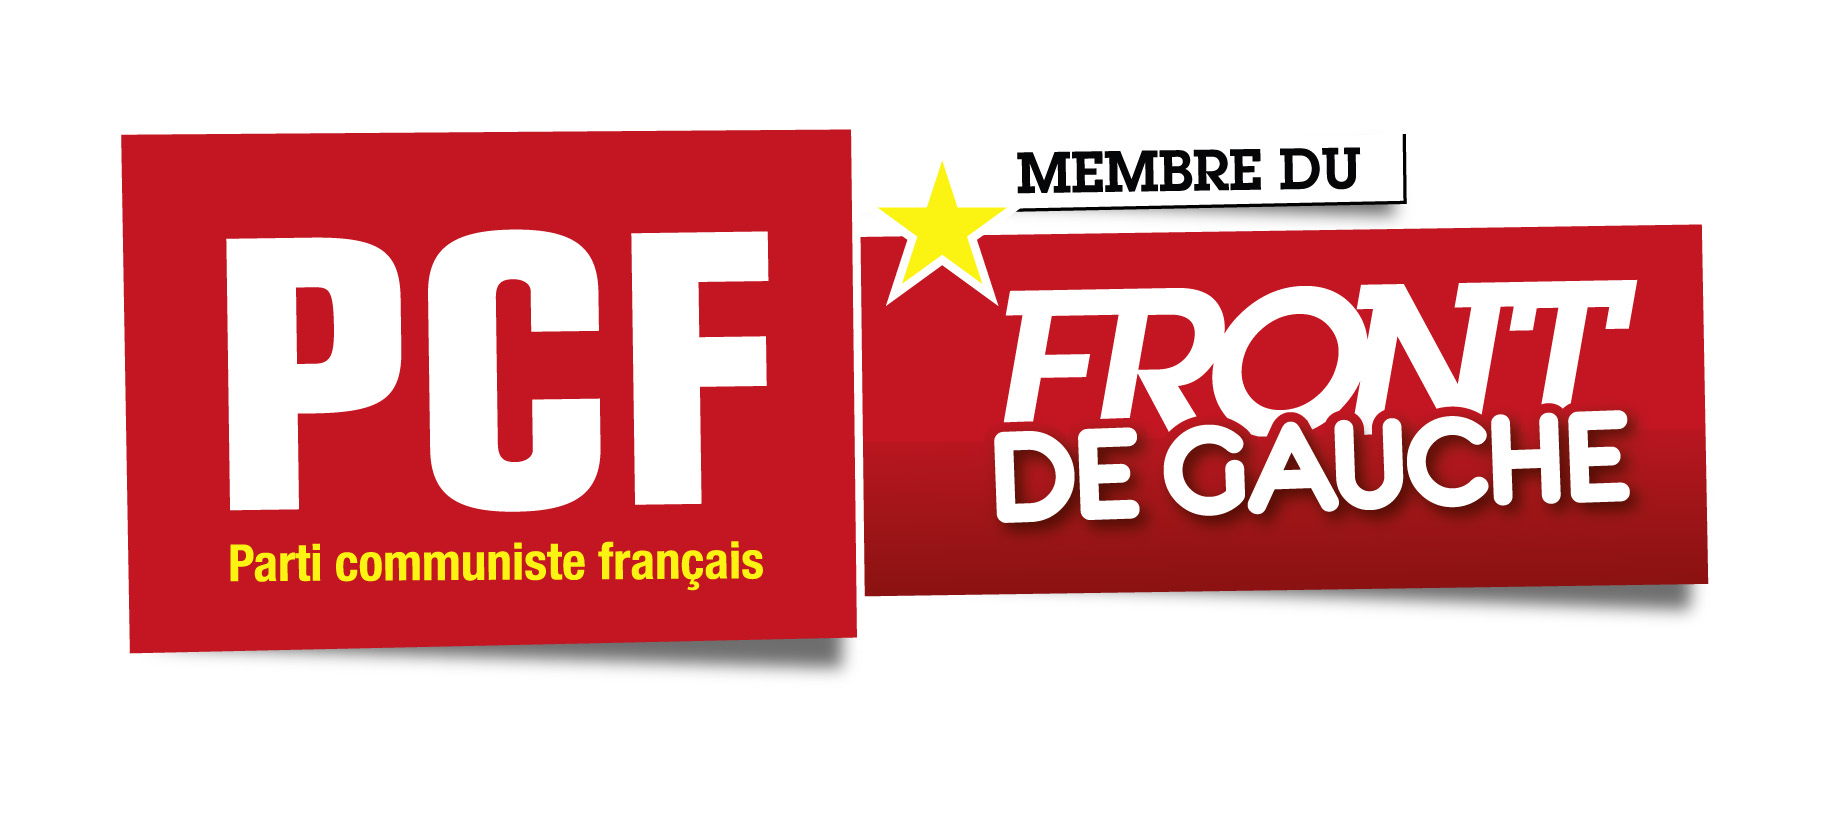 Paris: Il n'y aura pas de logo du Front de Gauche sur le matériel d'Hidalgo